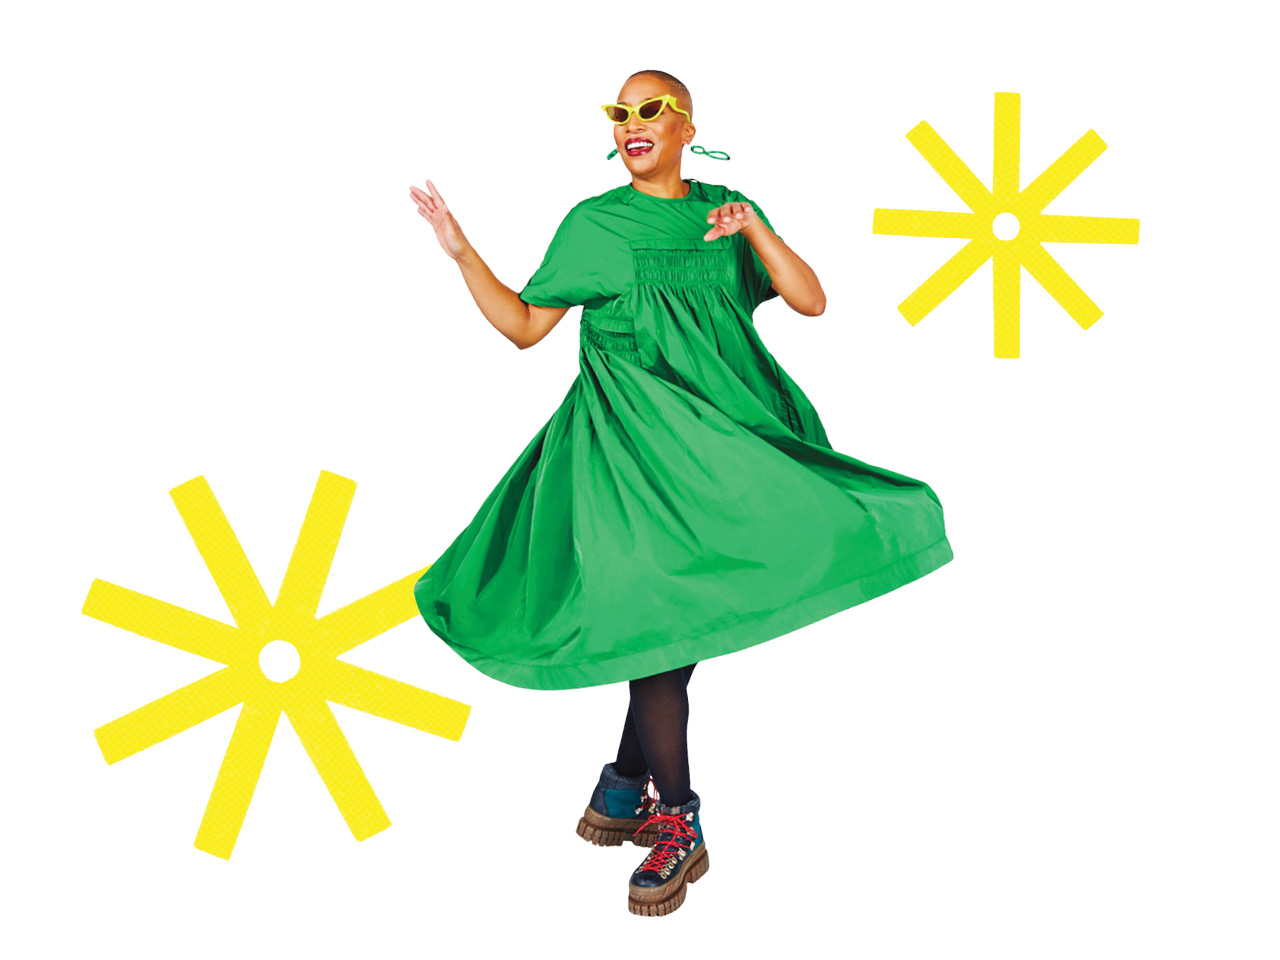 Dress: warrenstevenscott. A woman twirling in a green dress.